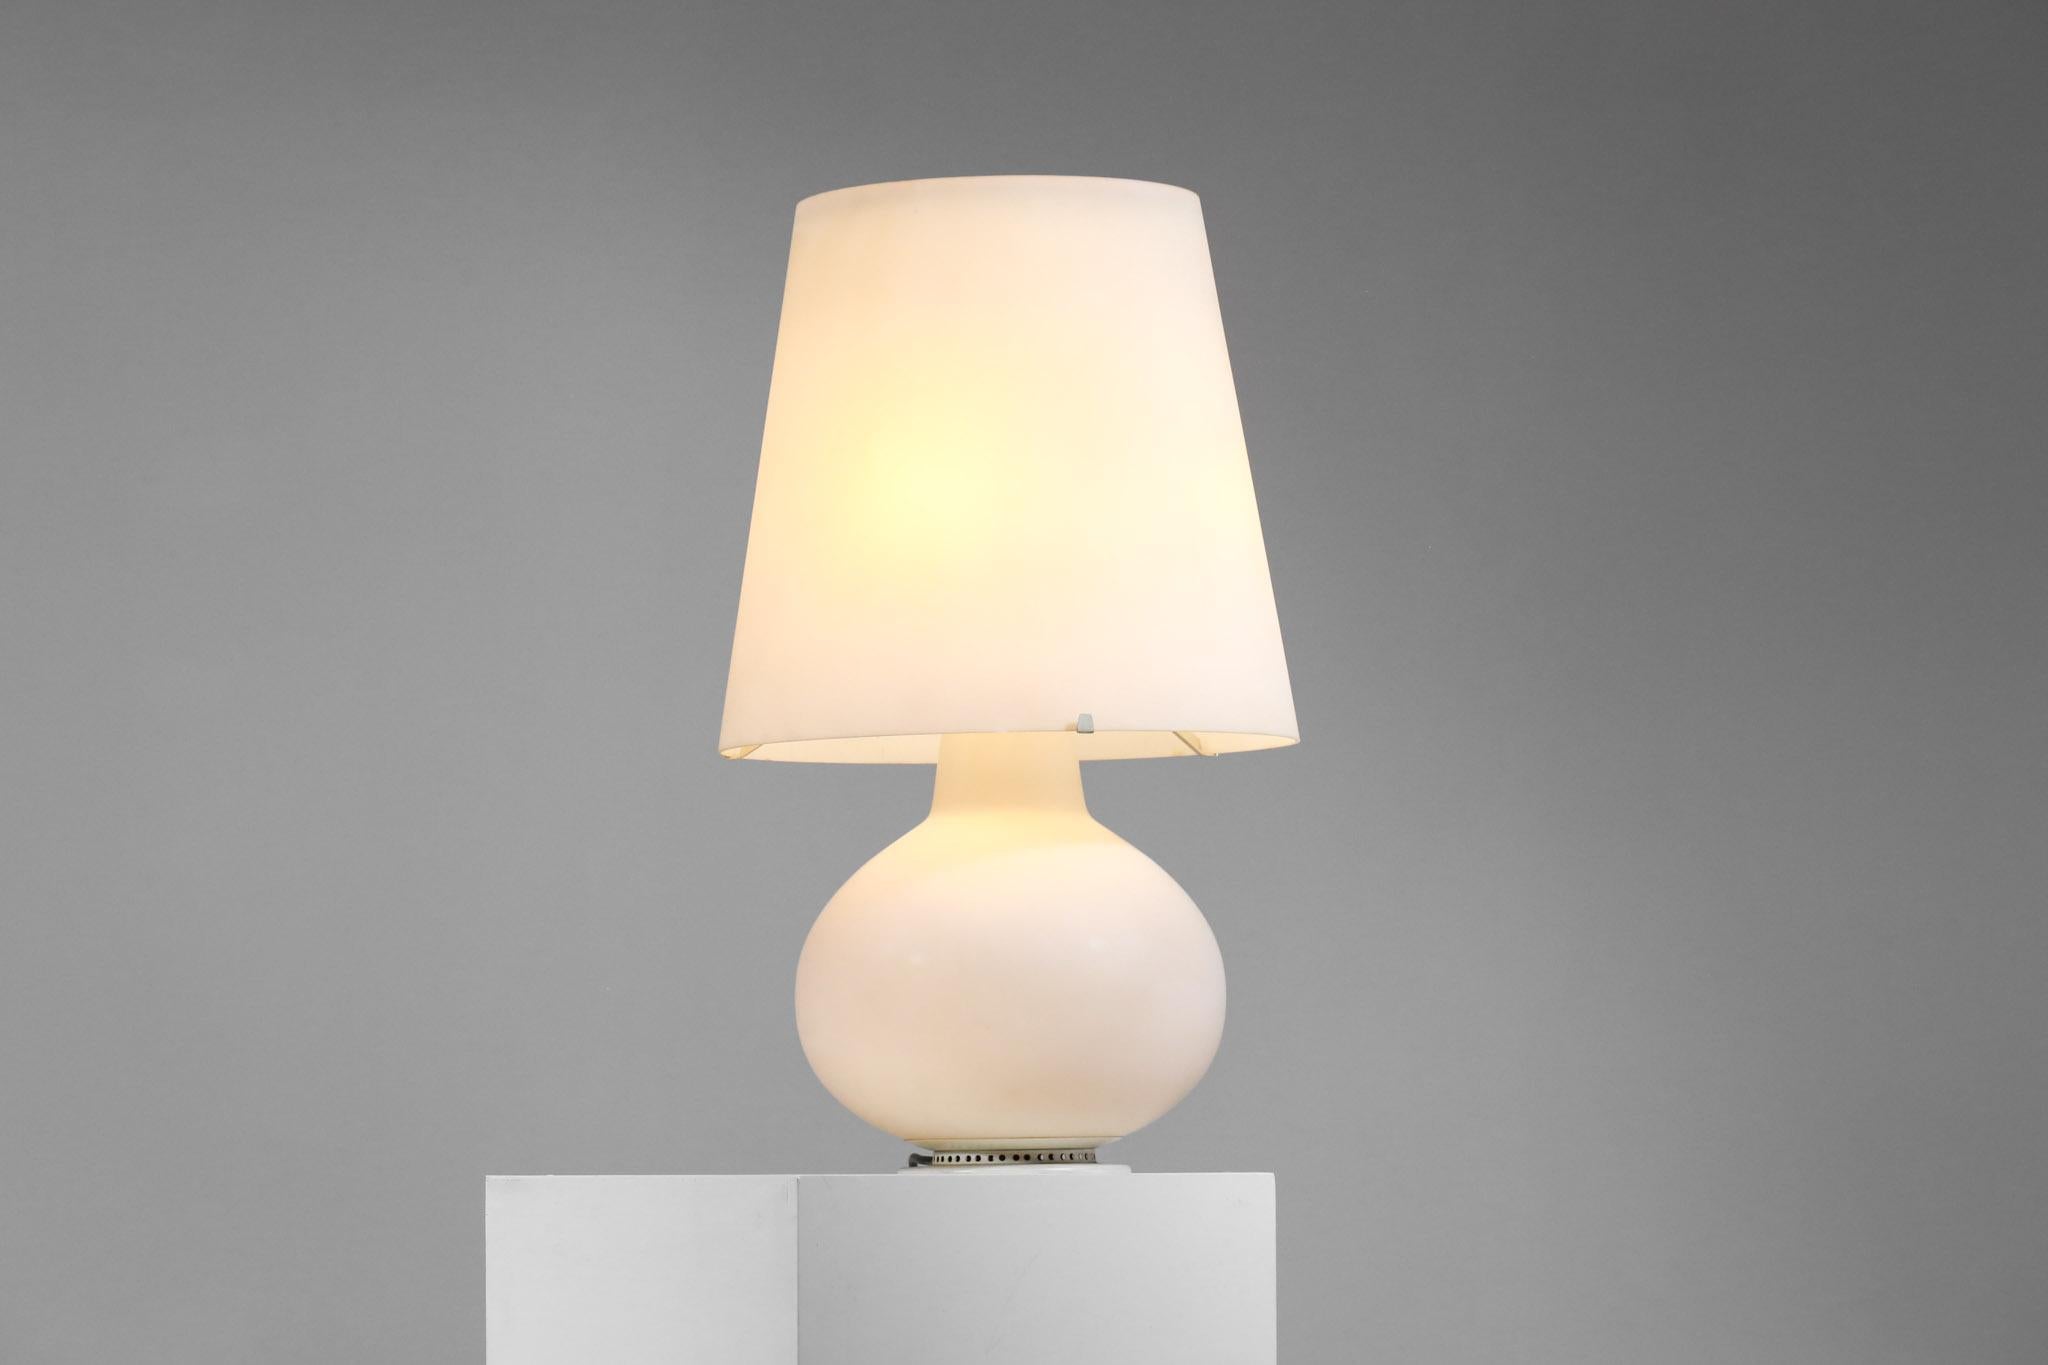 Lámpara de escritorio italiana, modelo grande, de la década de 1960.
Diseñado por Max Ingrand para Fontana Arte. 
Estructura y sombra en opalina blanca.
La opalina muestra signos de desgaste.